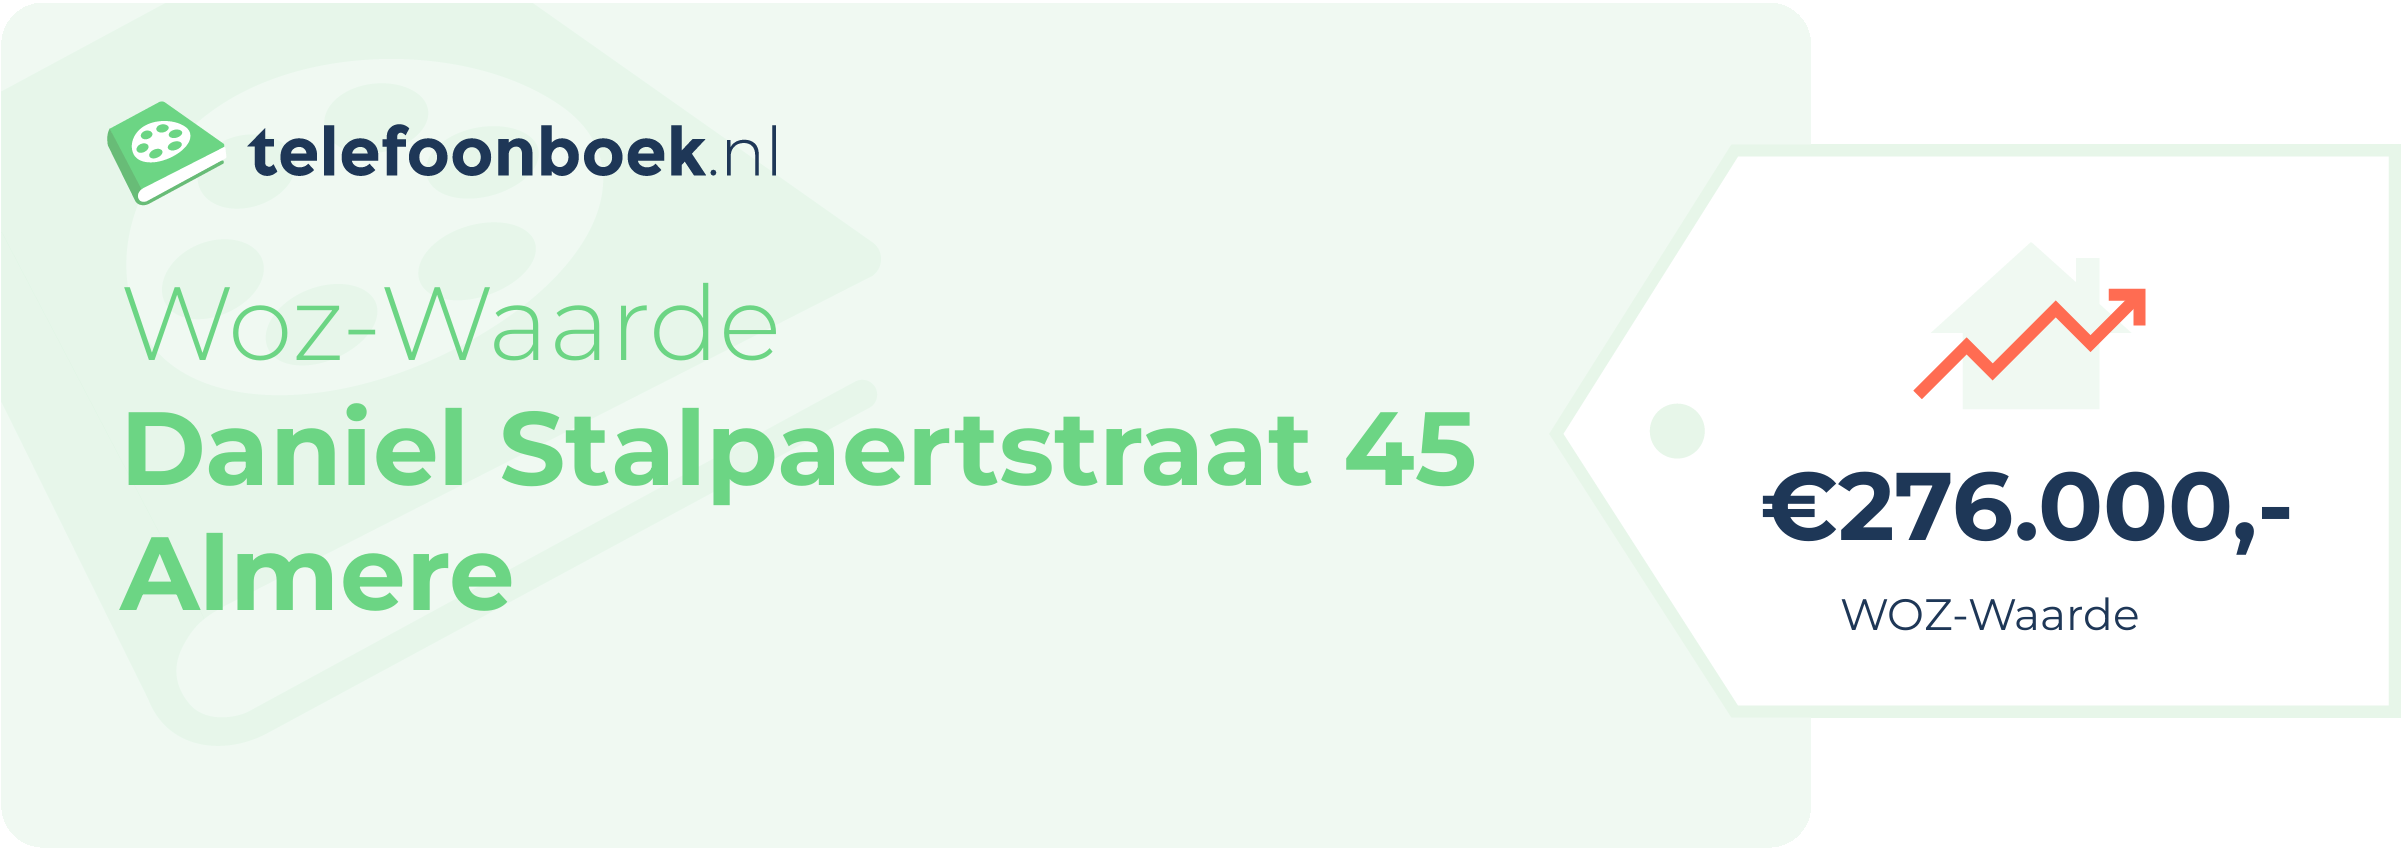 WOZ-waarde Daniel Stalpaertstraat 45 Almere